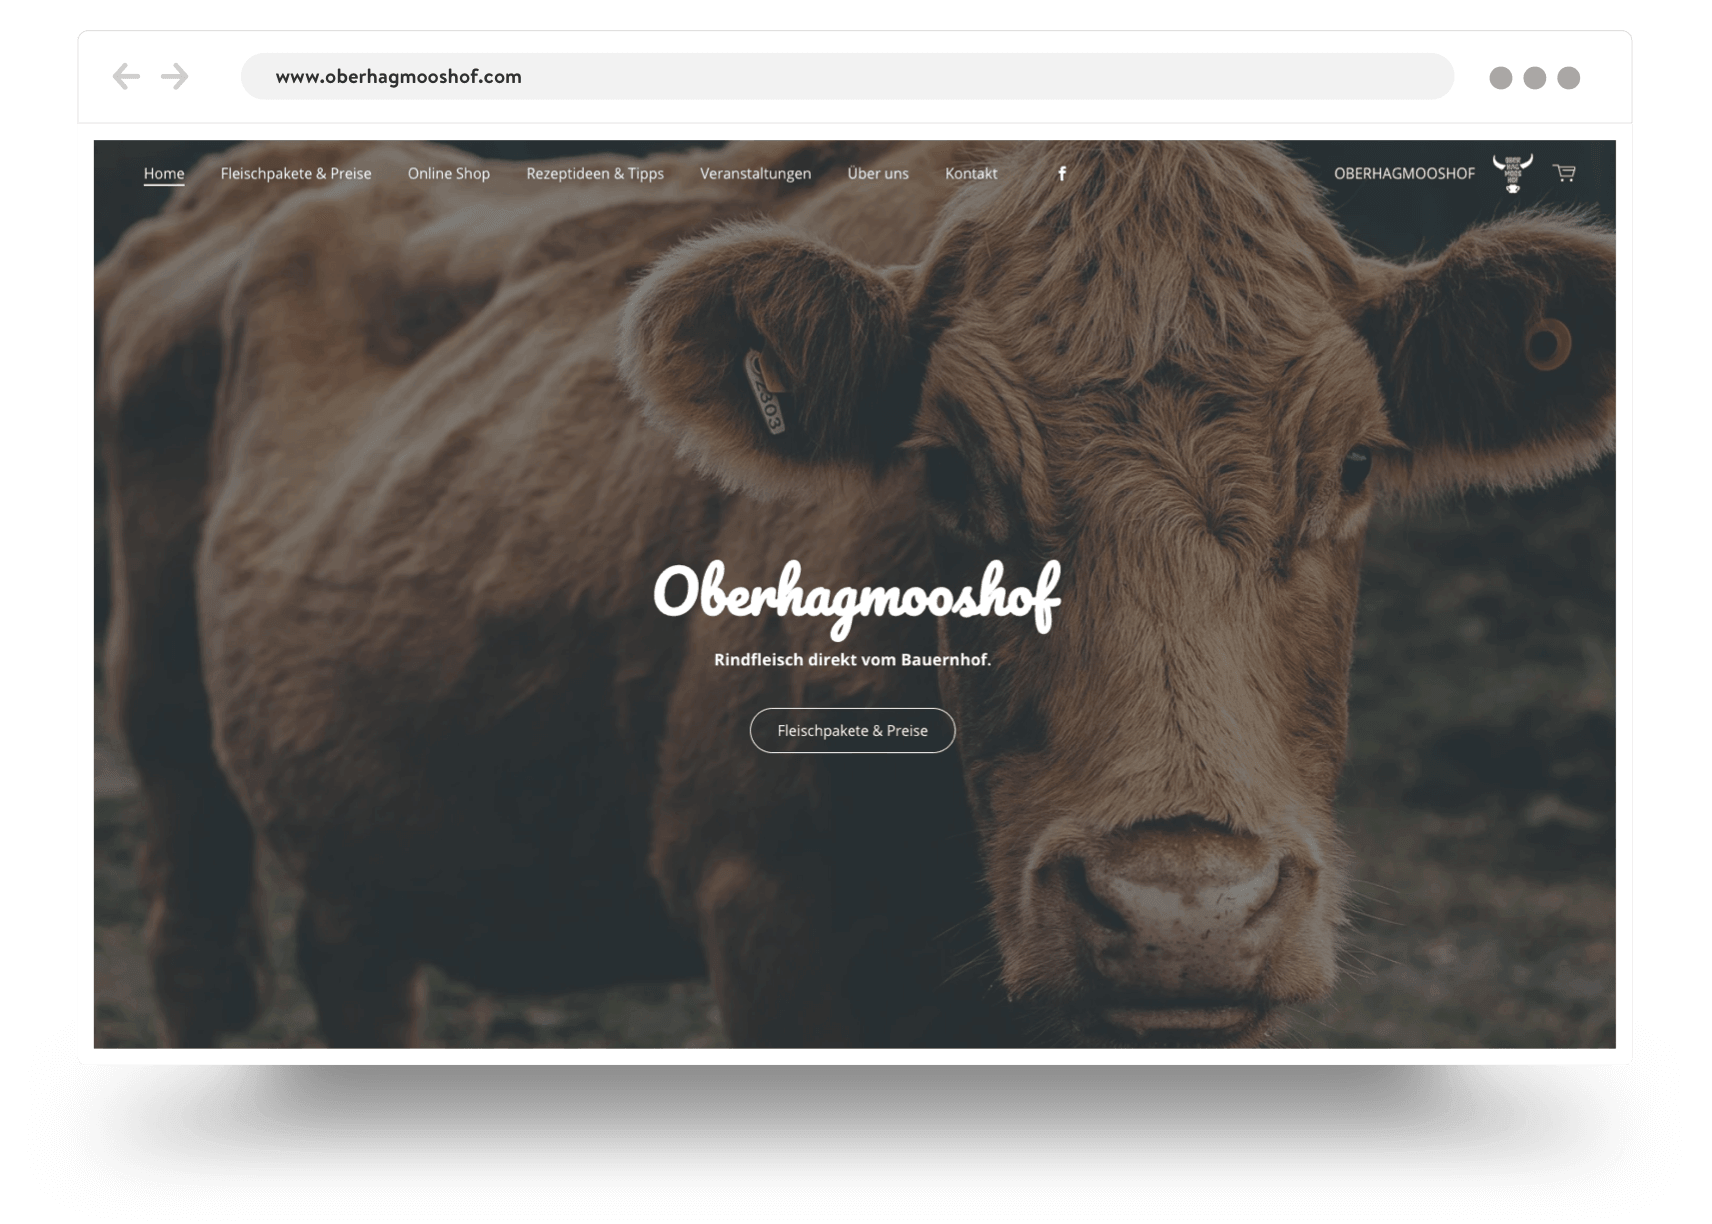 Página de inicio de la página web de una tienda de productos para granjas con un primer plano de la cara de una vaca 